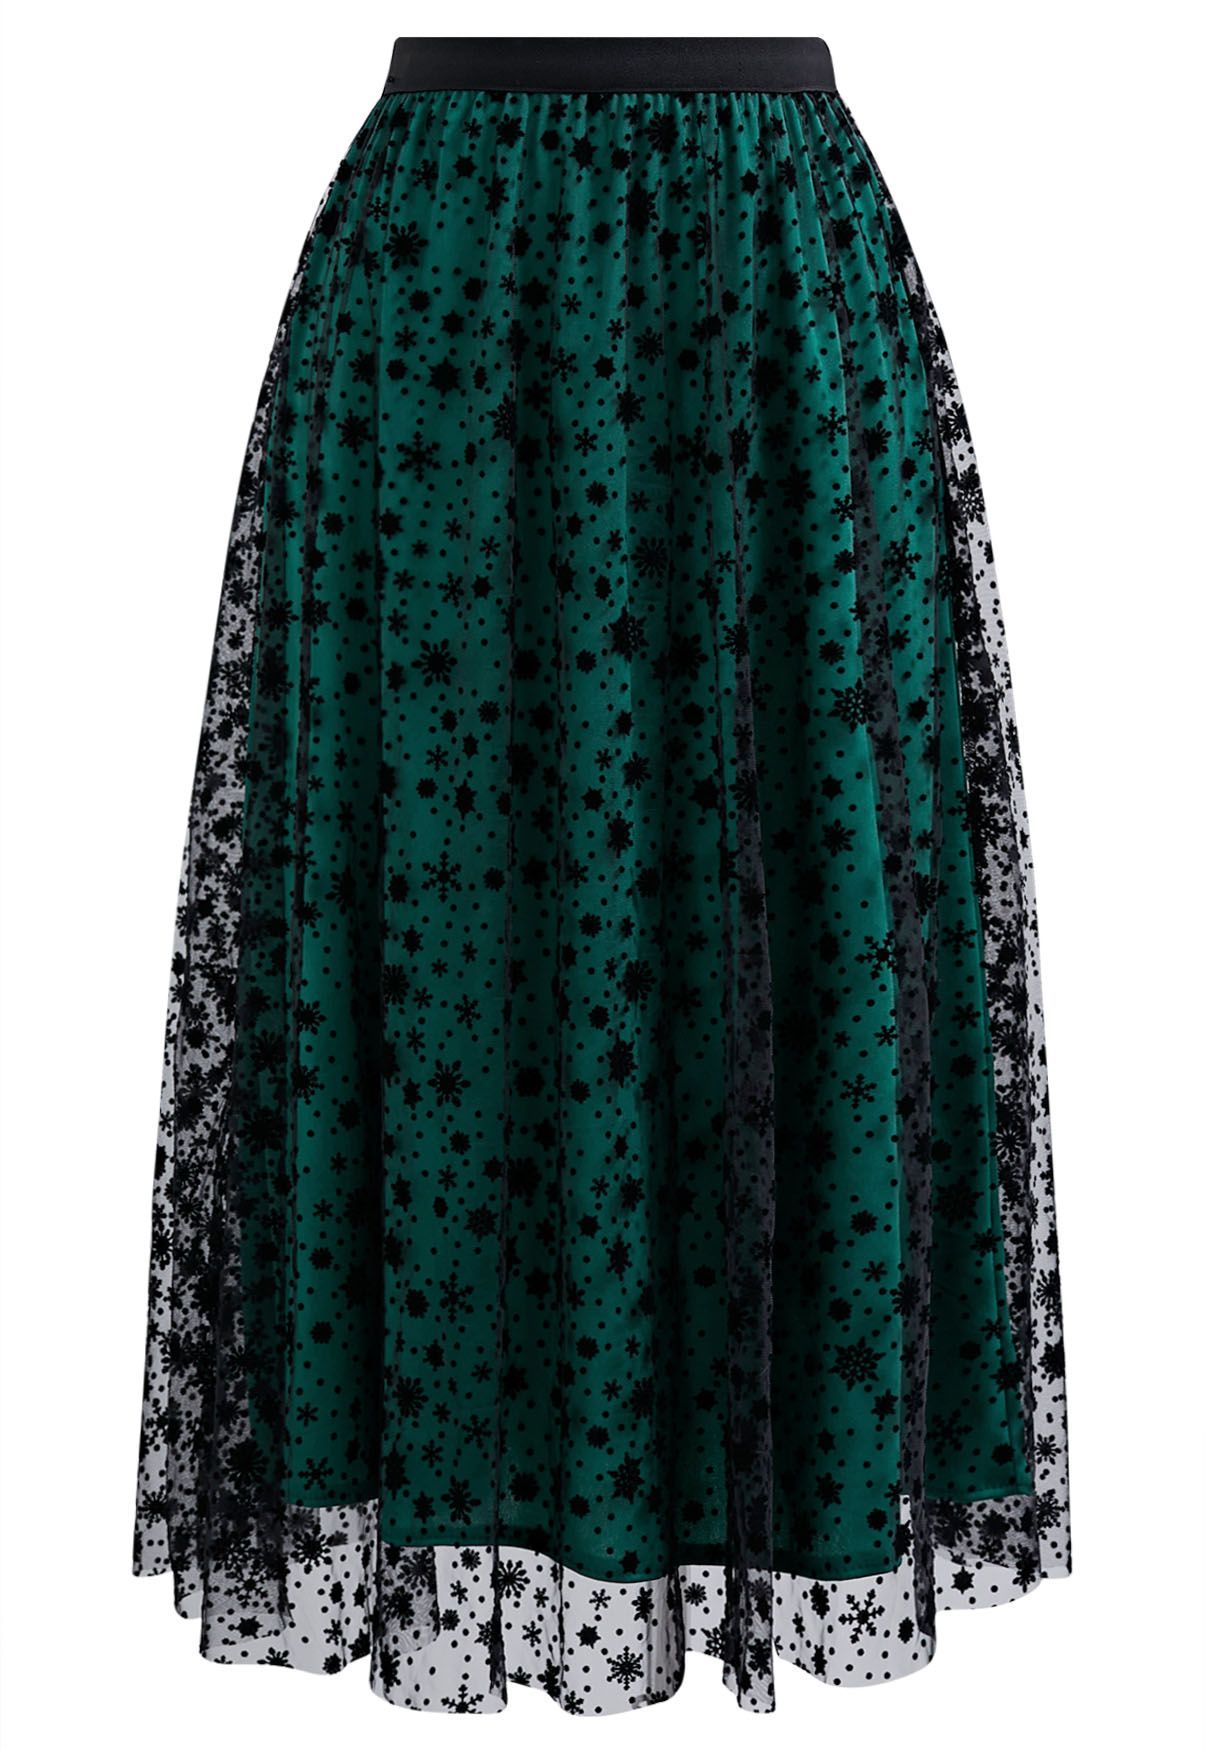 Velvet Snowflake Mesh Tulle Midi Skirt in Dark Green | Chicwish